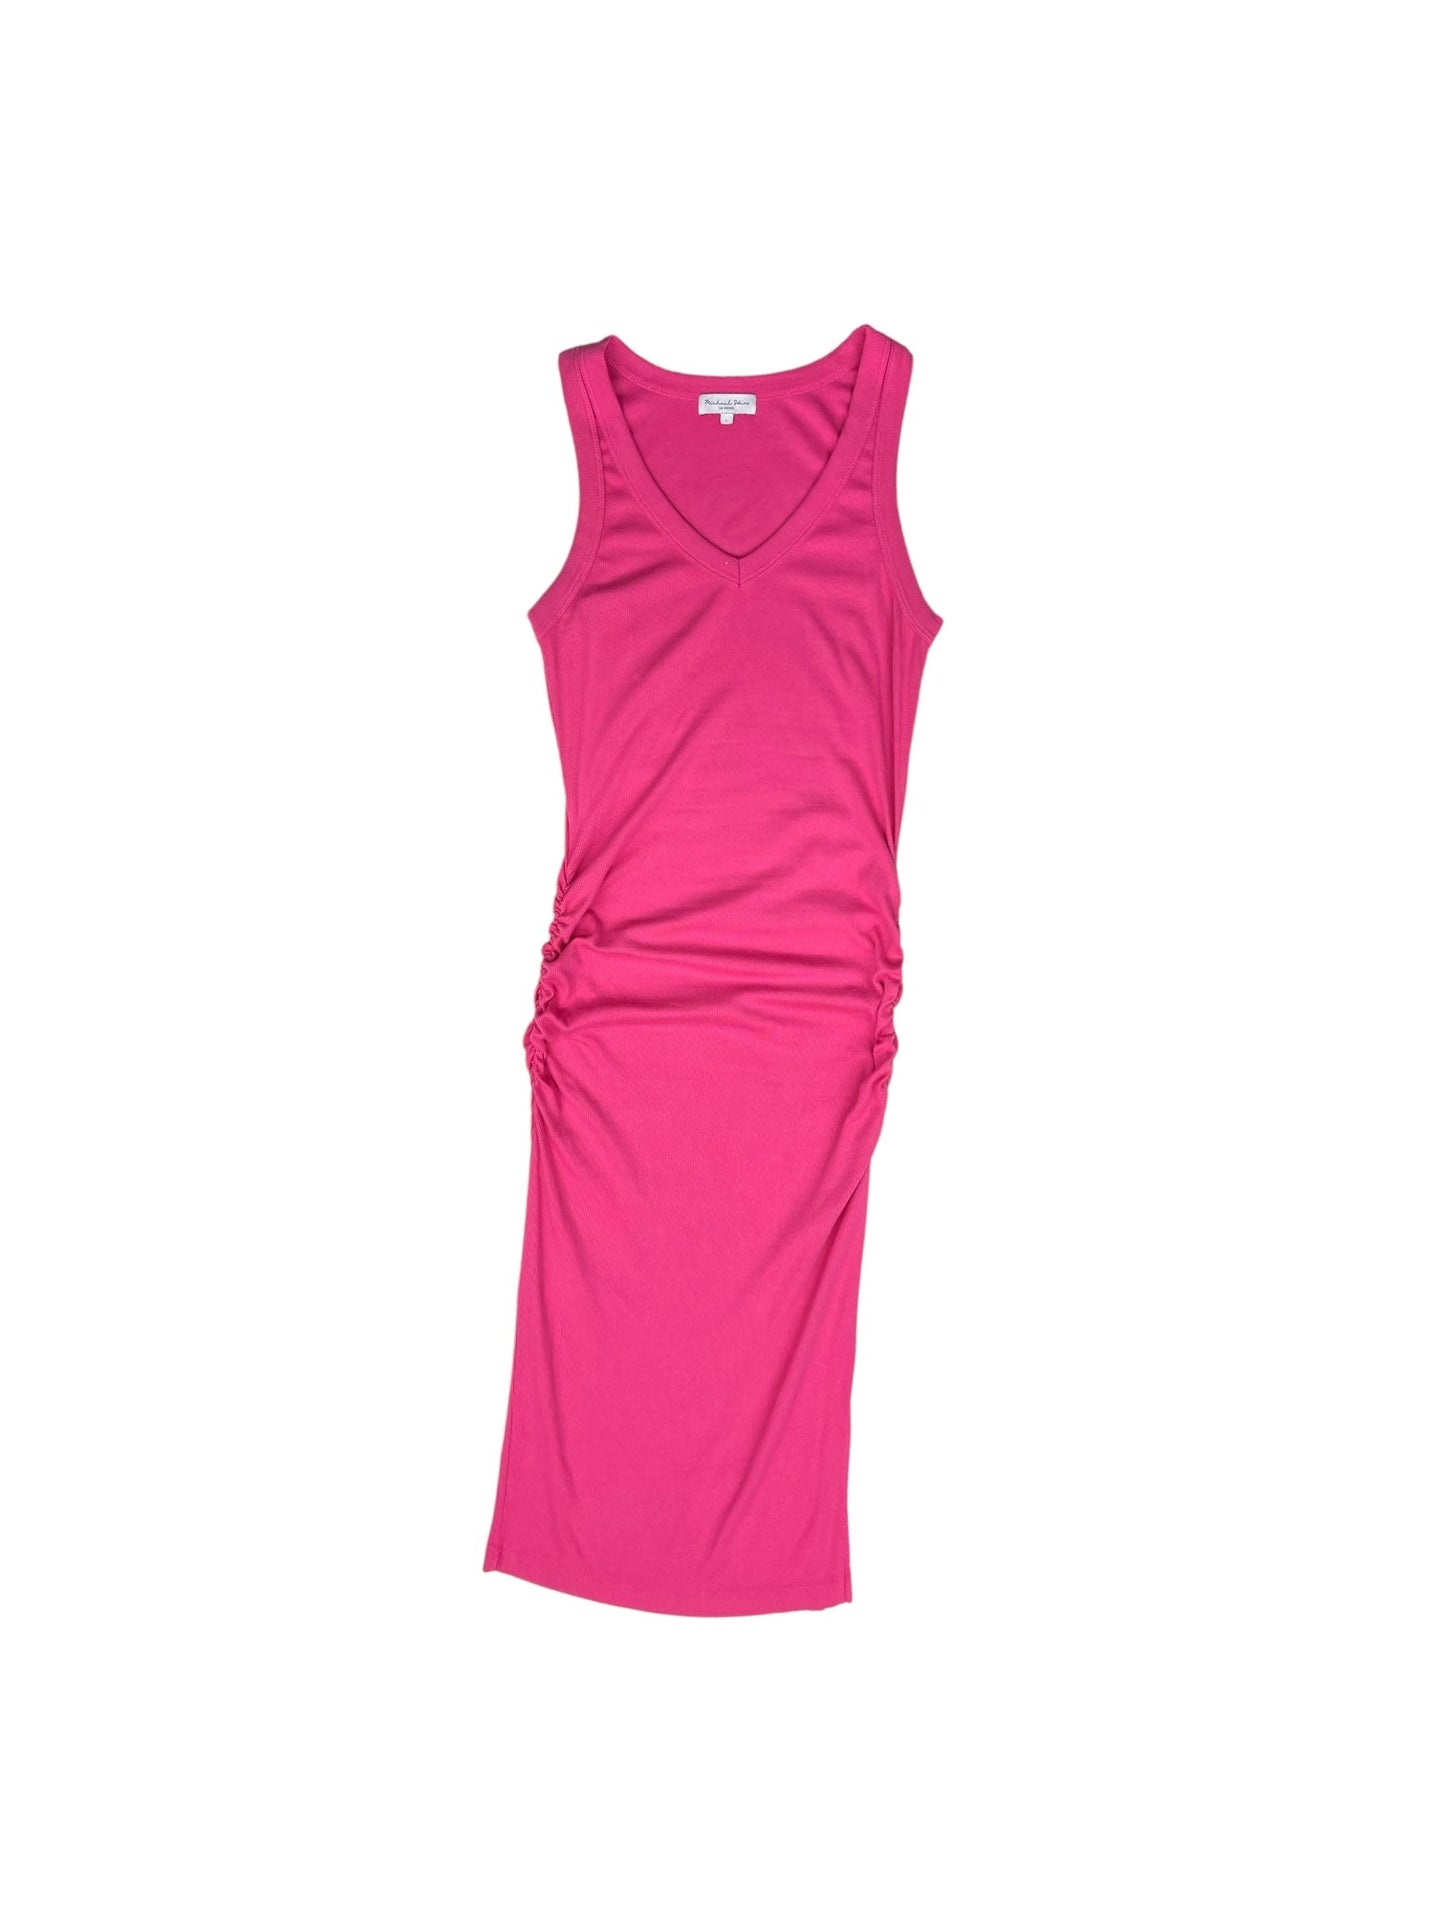 Pink Dress Casual Midi Michael Stars, Size L